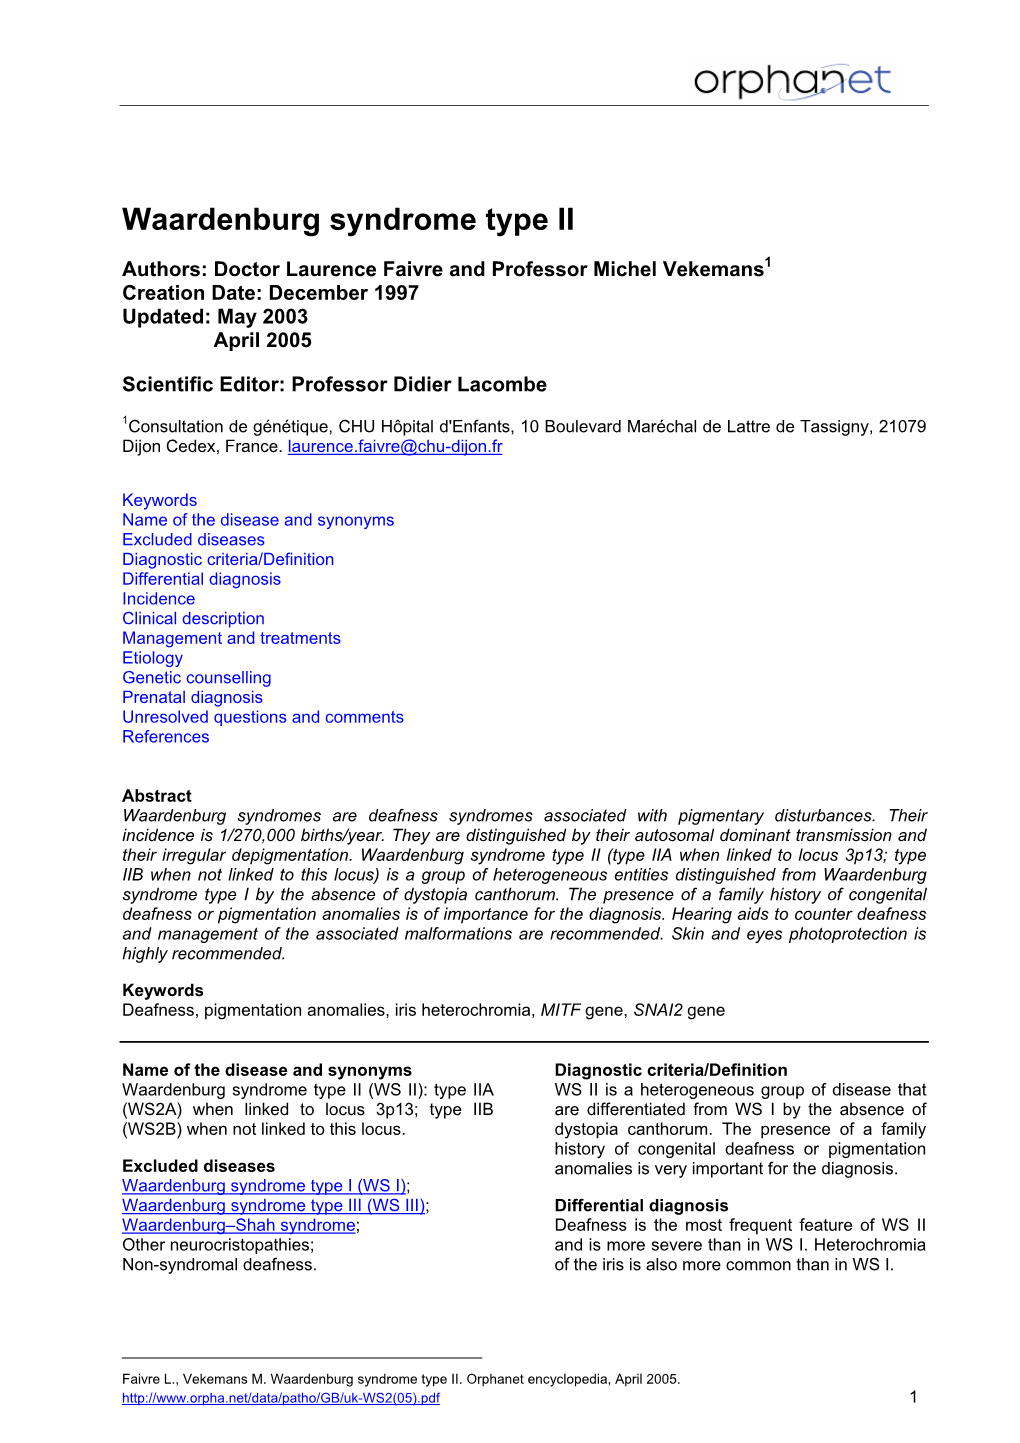 Waardenburg Syndrome Type II